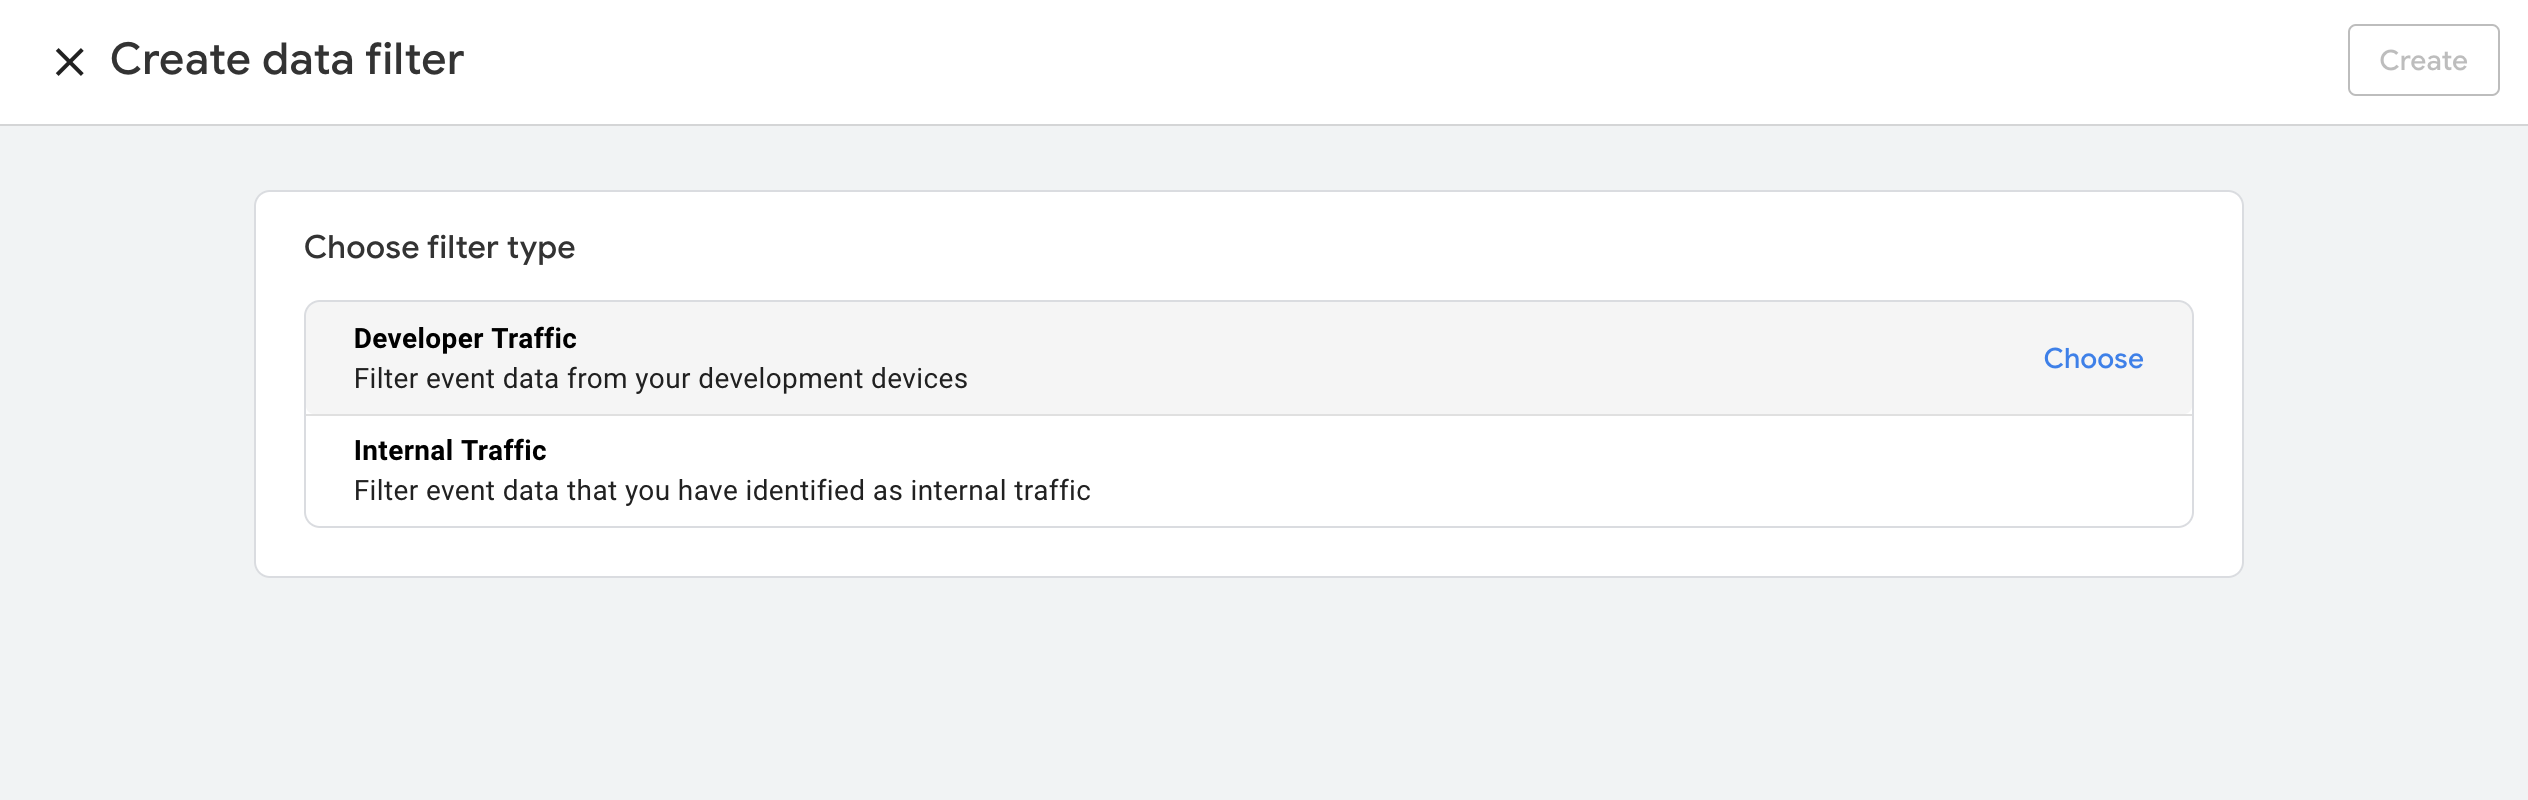 Filtering traffic in Google Analytics 4